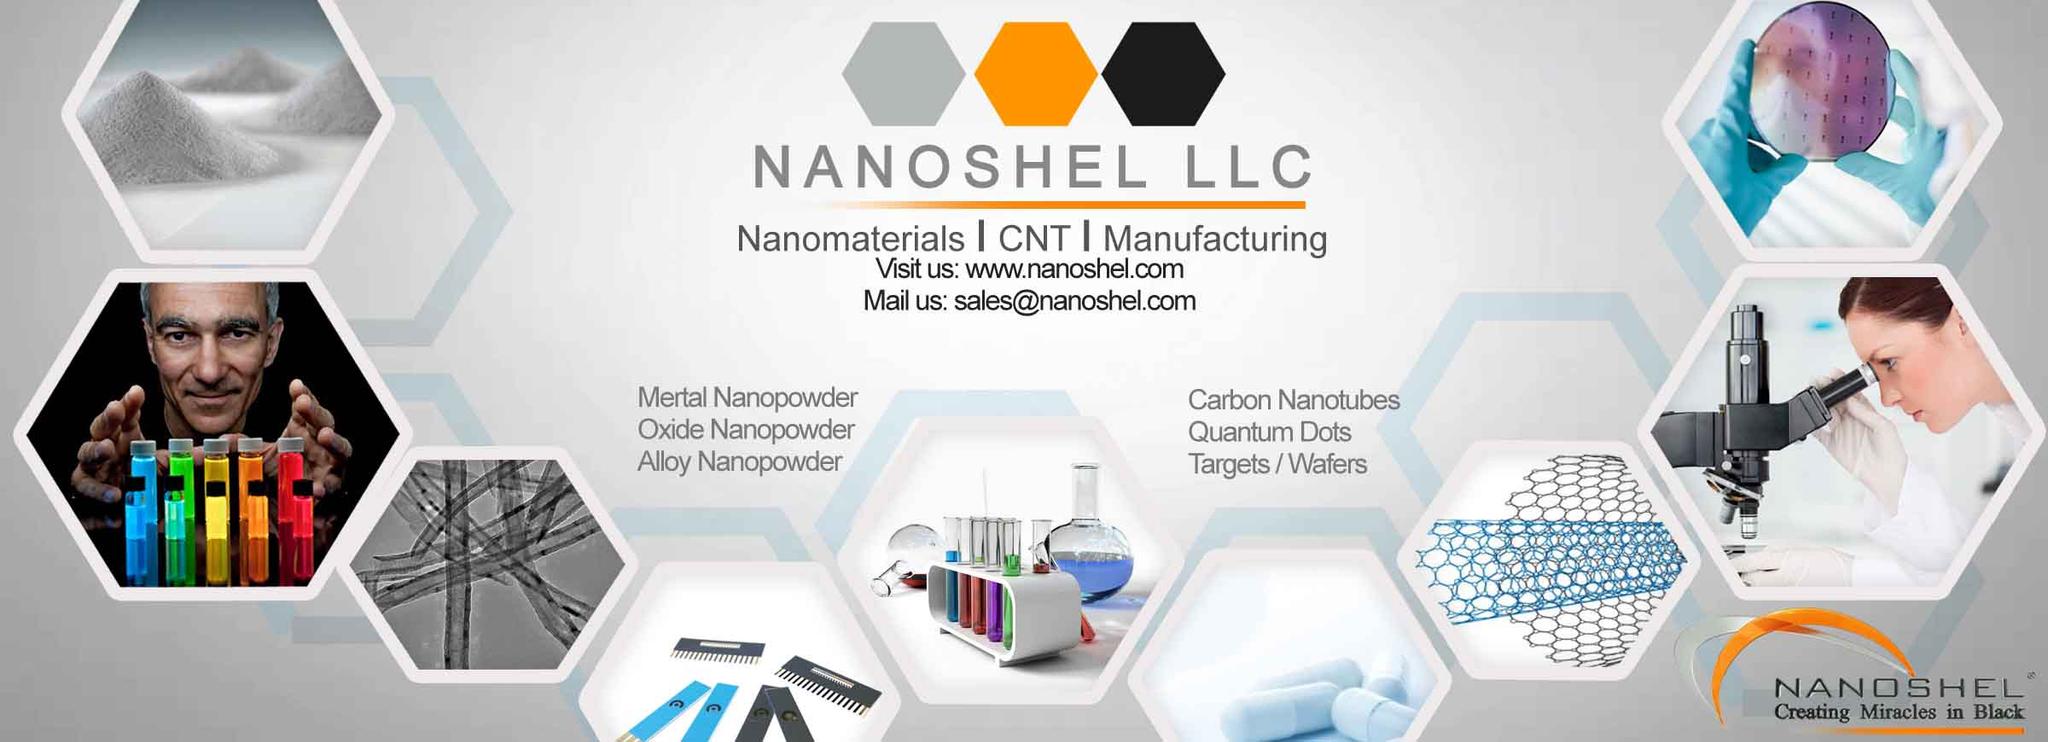 nanoshel-experts